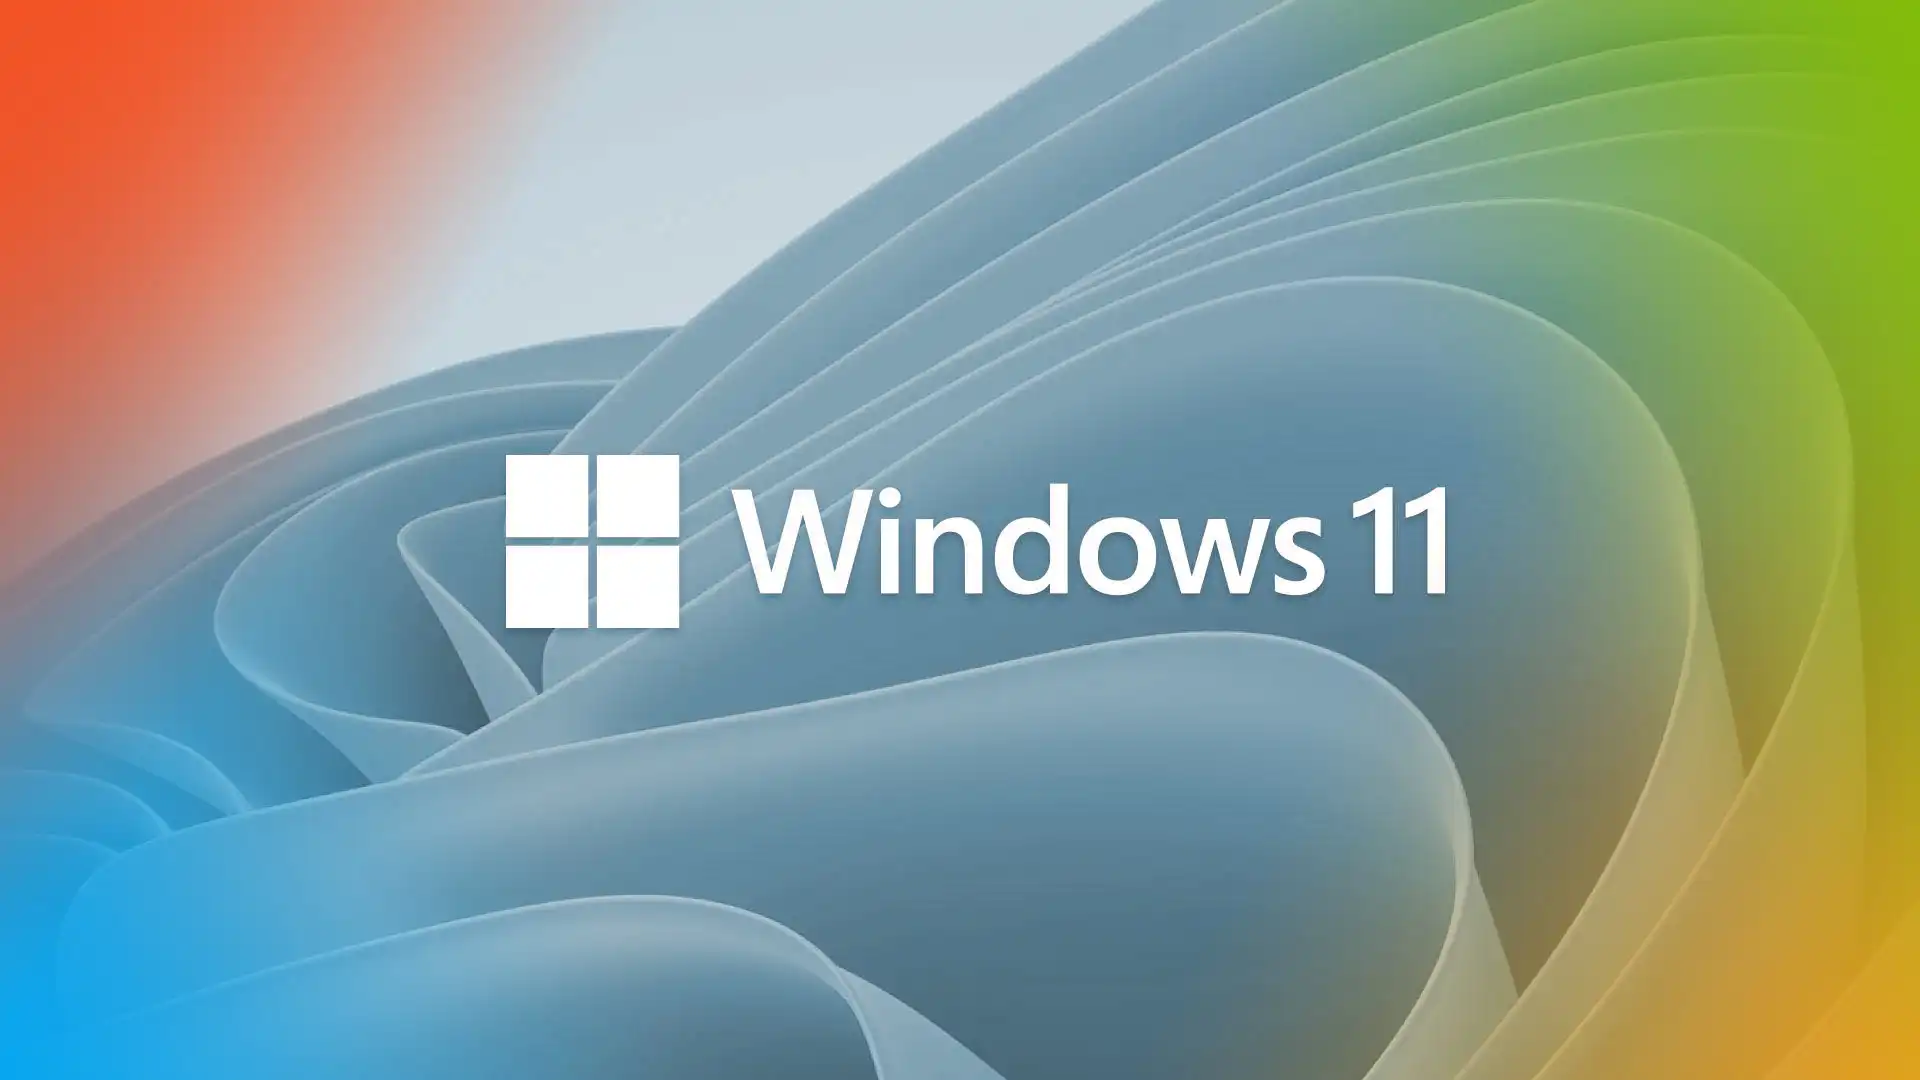 Përditësimi i madh i Microsoft Windows 11 sjell ndryshime të mëdha